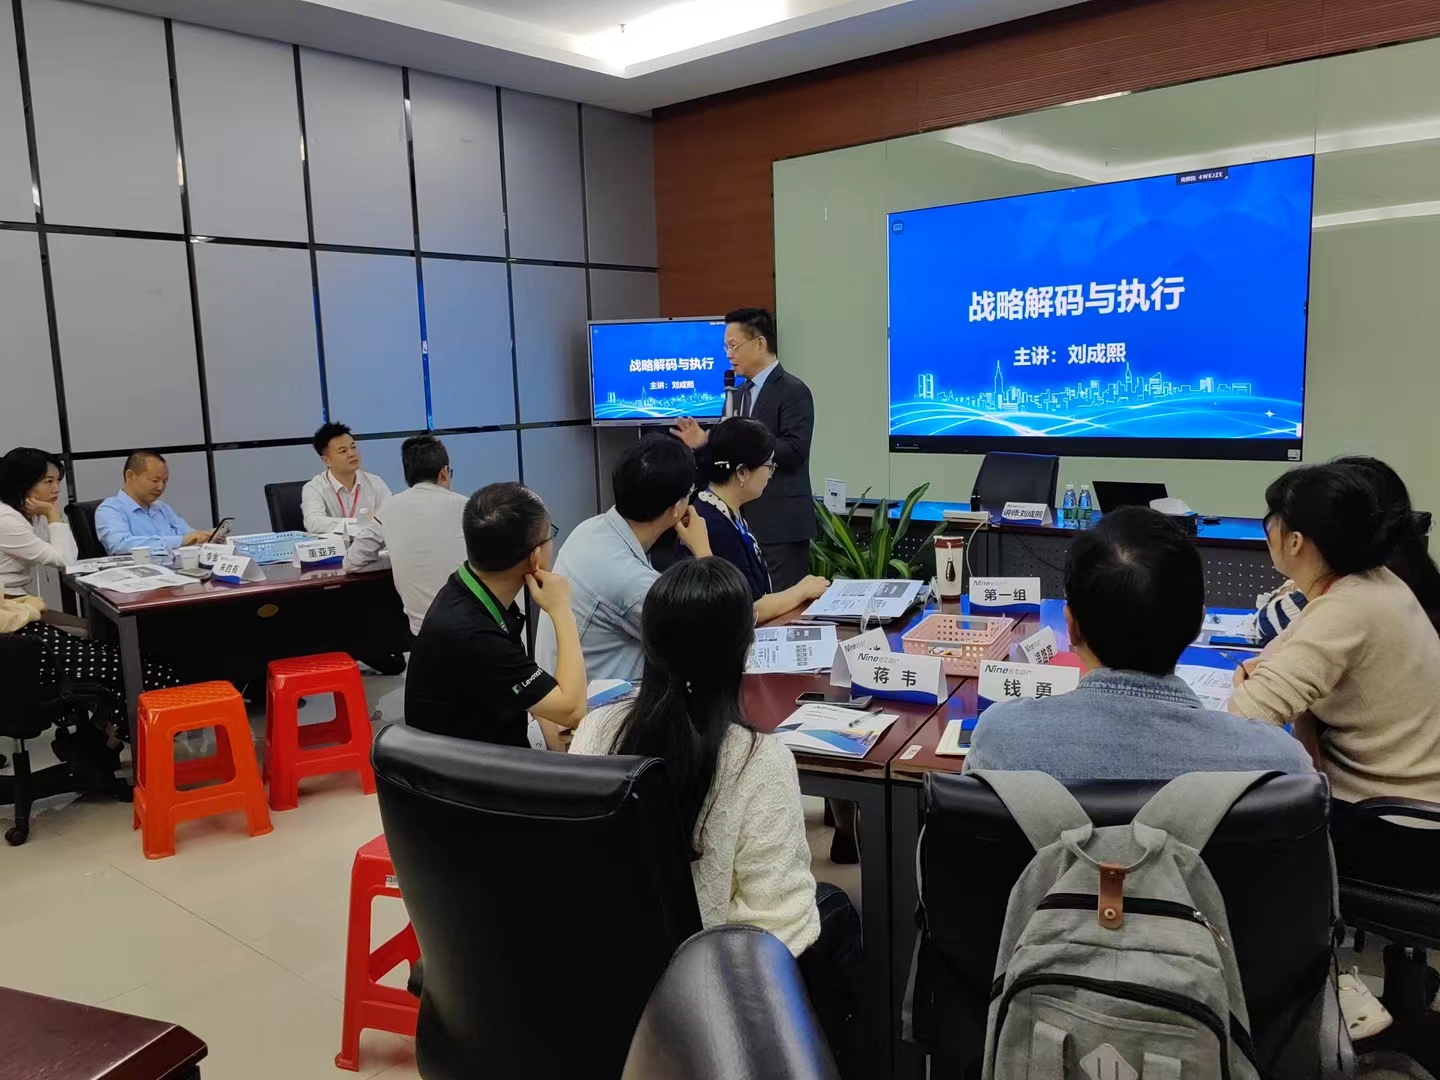 2023年11月24号刘成熙老师为极海微电子股份有限公司成功授课《战略解码与执行》课程